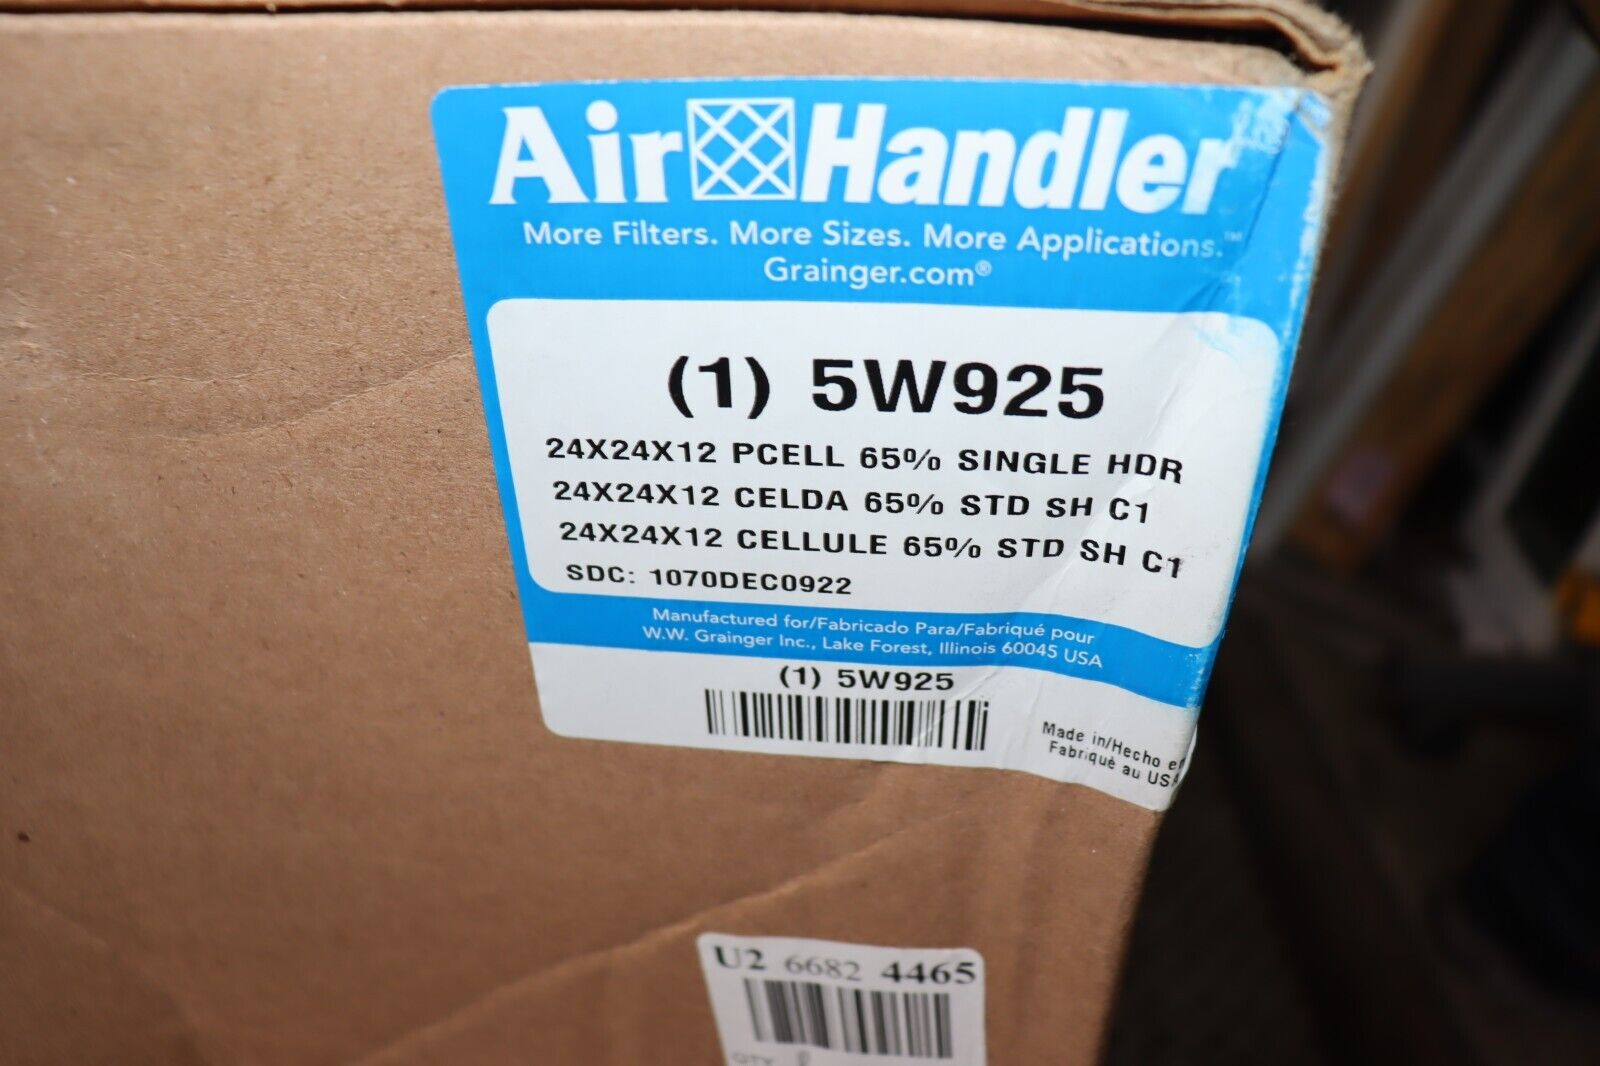 Air Filter 24 x 24 x 12 Cartridge MERV 11 AIR HANDLER 5W925